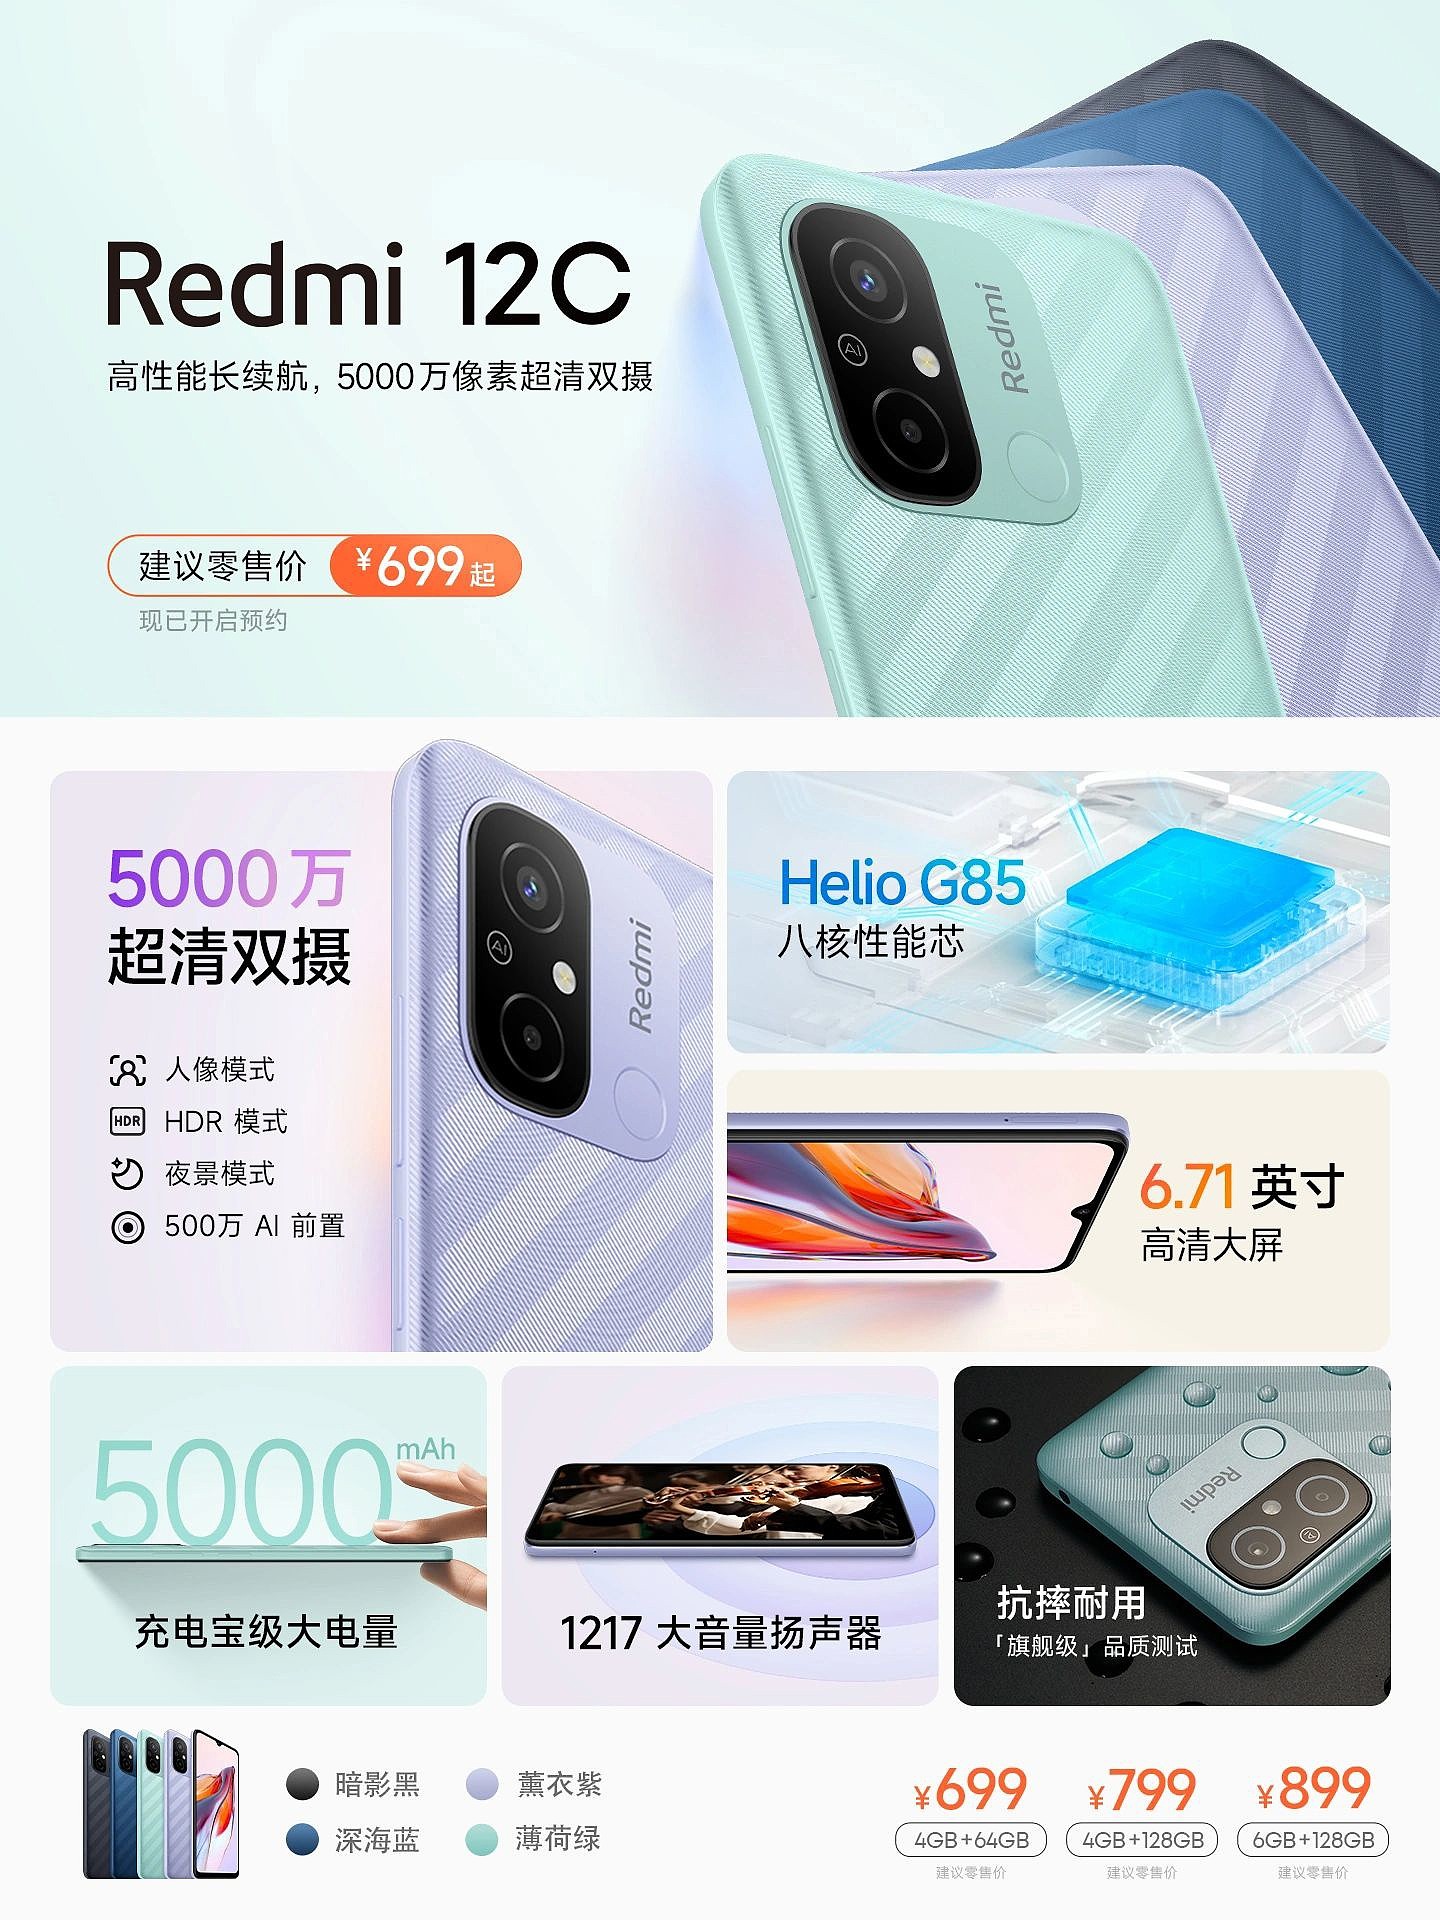 小米 Redmi 12C 国际版已在印尼开售，3GB+32GB 组合起售价 1399000 印尼盾 - 3